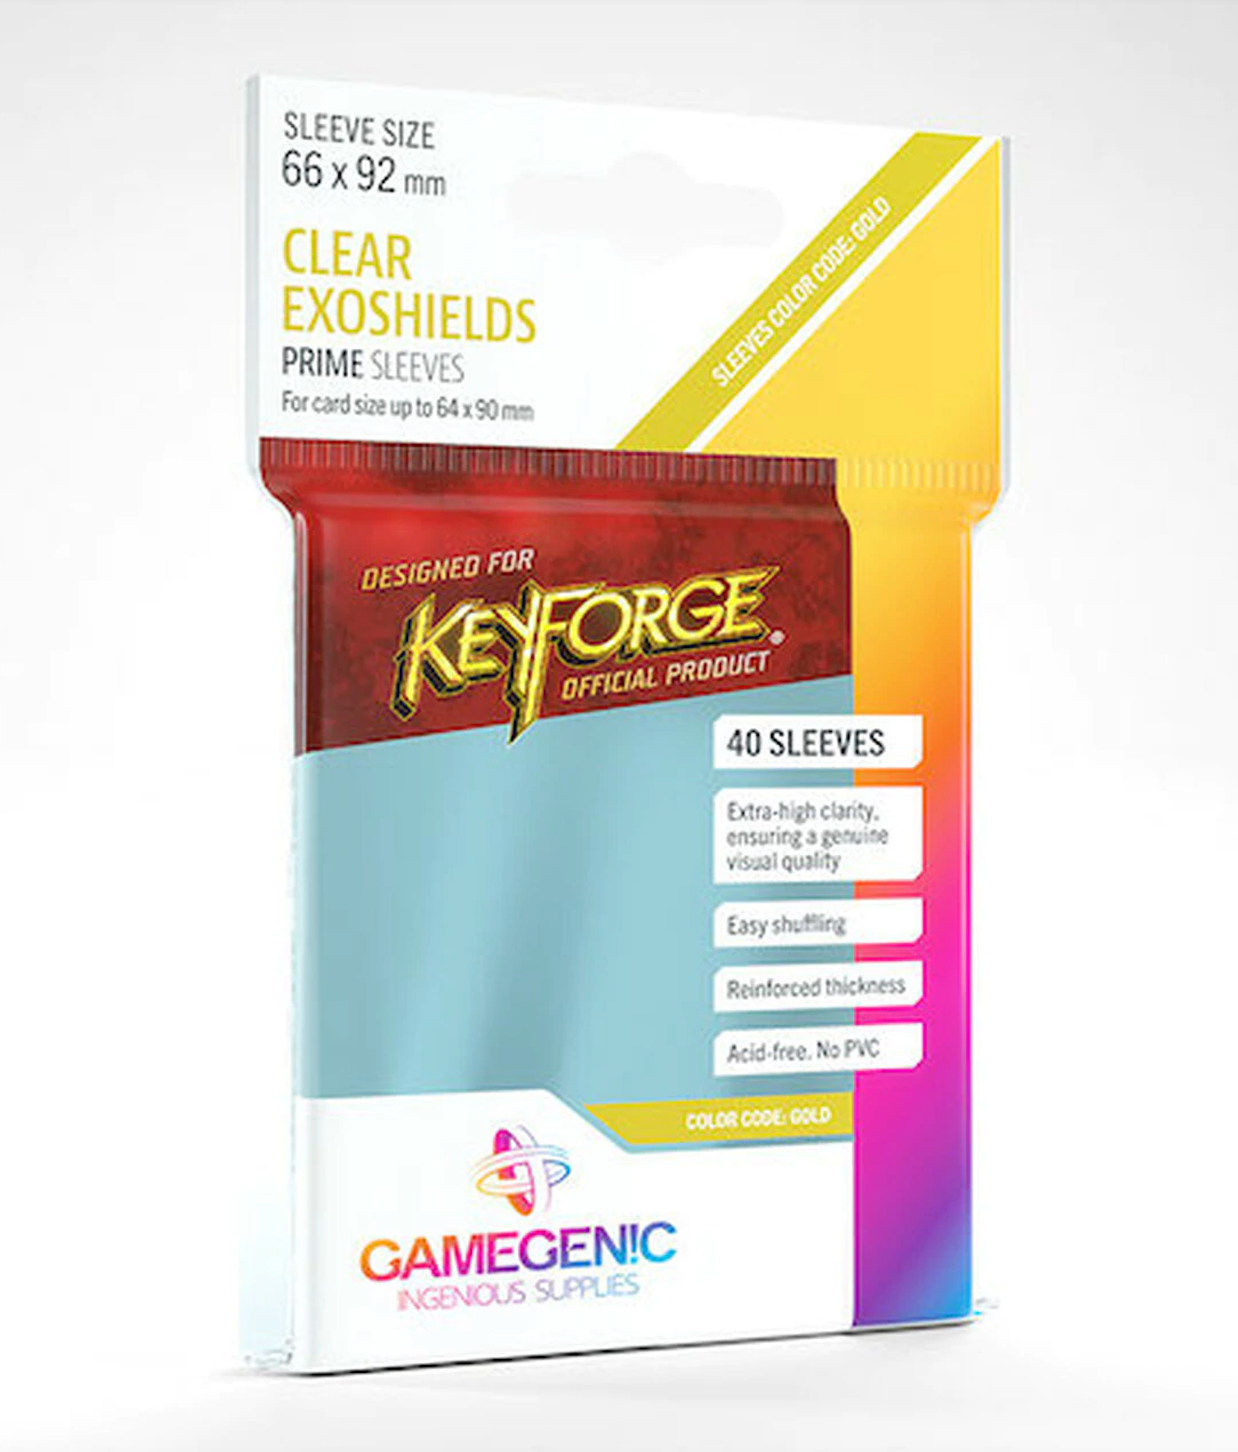 Gamegenic sleeves: Keyforge Prime Sleeves - Clear